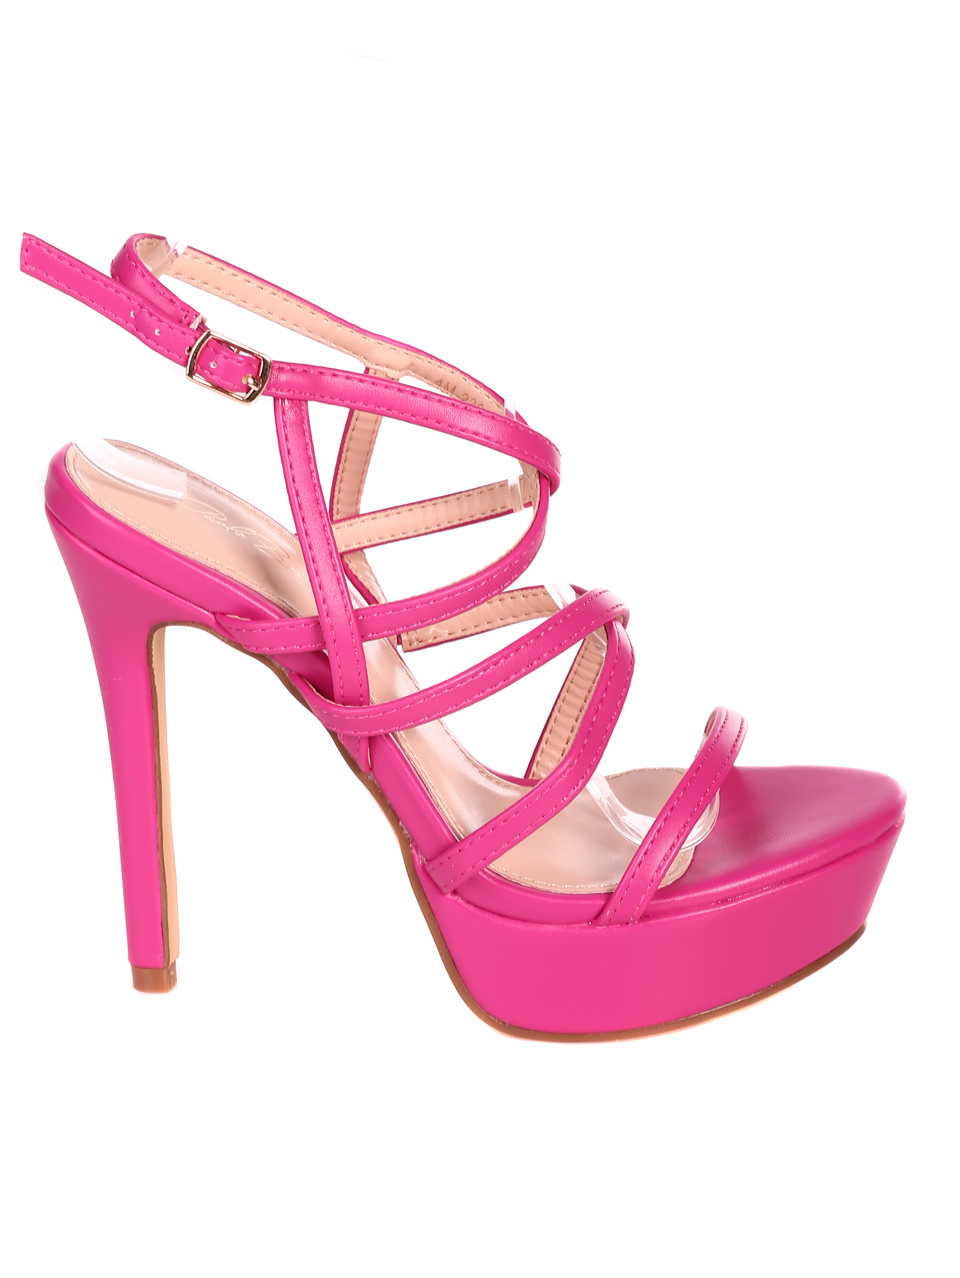 Елегантни дамски сандали на висок ток 4M-23040 pink